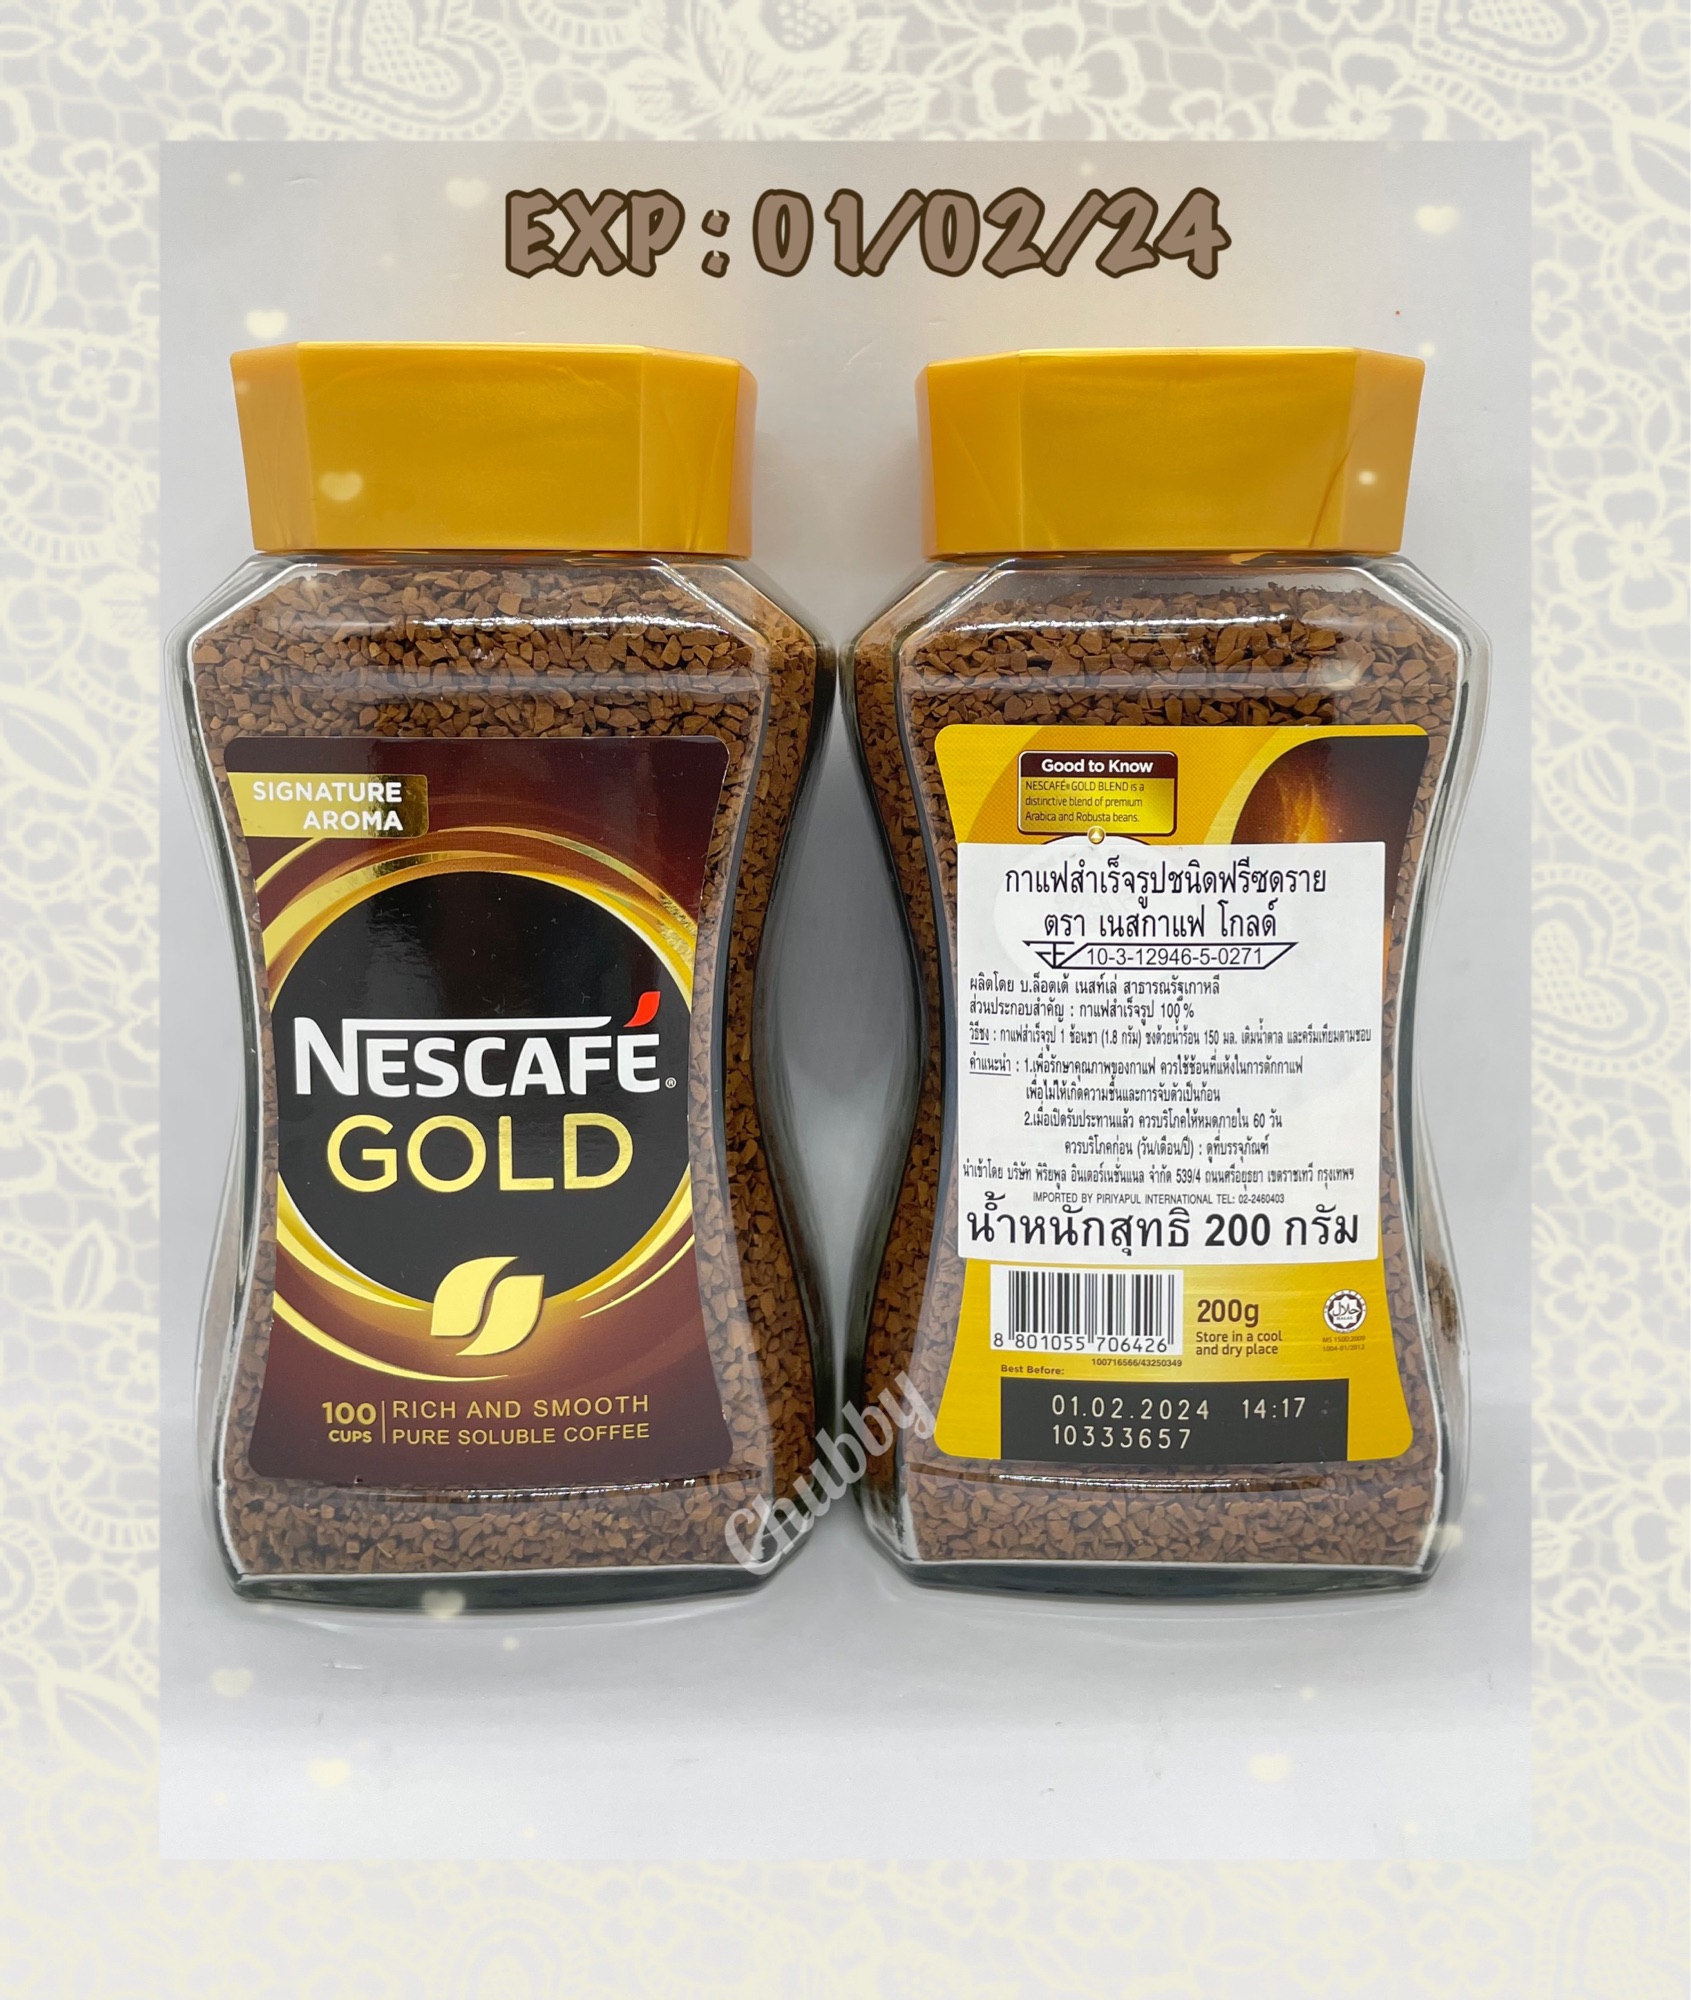 เนสกาแฟโกลด์ ริช แอนด์ สมูธ(Nescafe Gold Rich And Smooth Coffee)200g จำนวน 1 ขวด